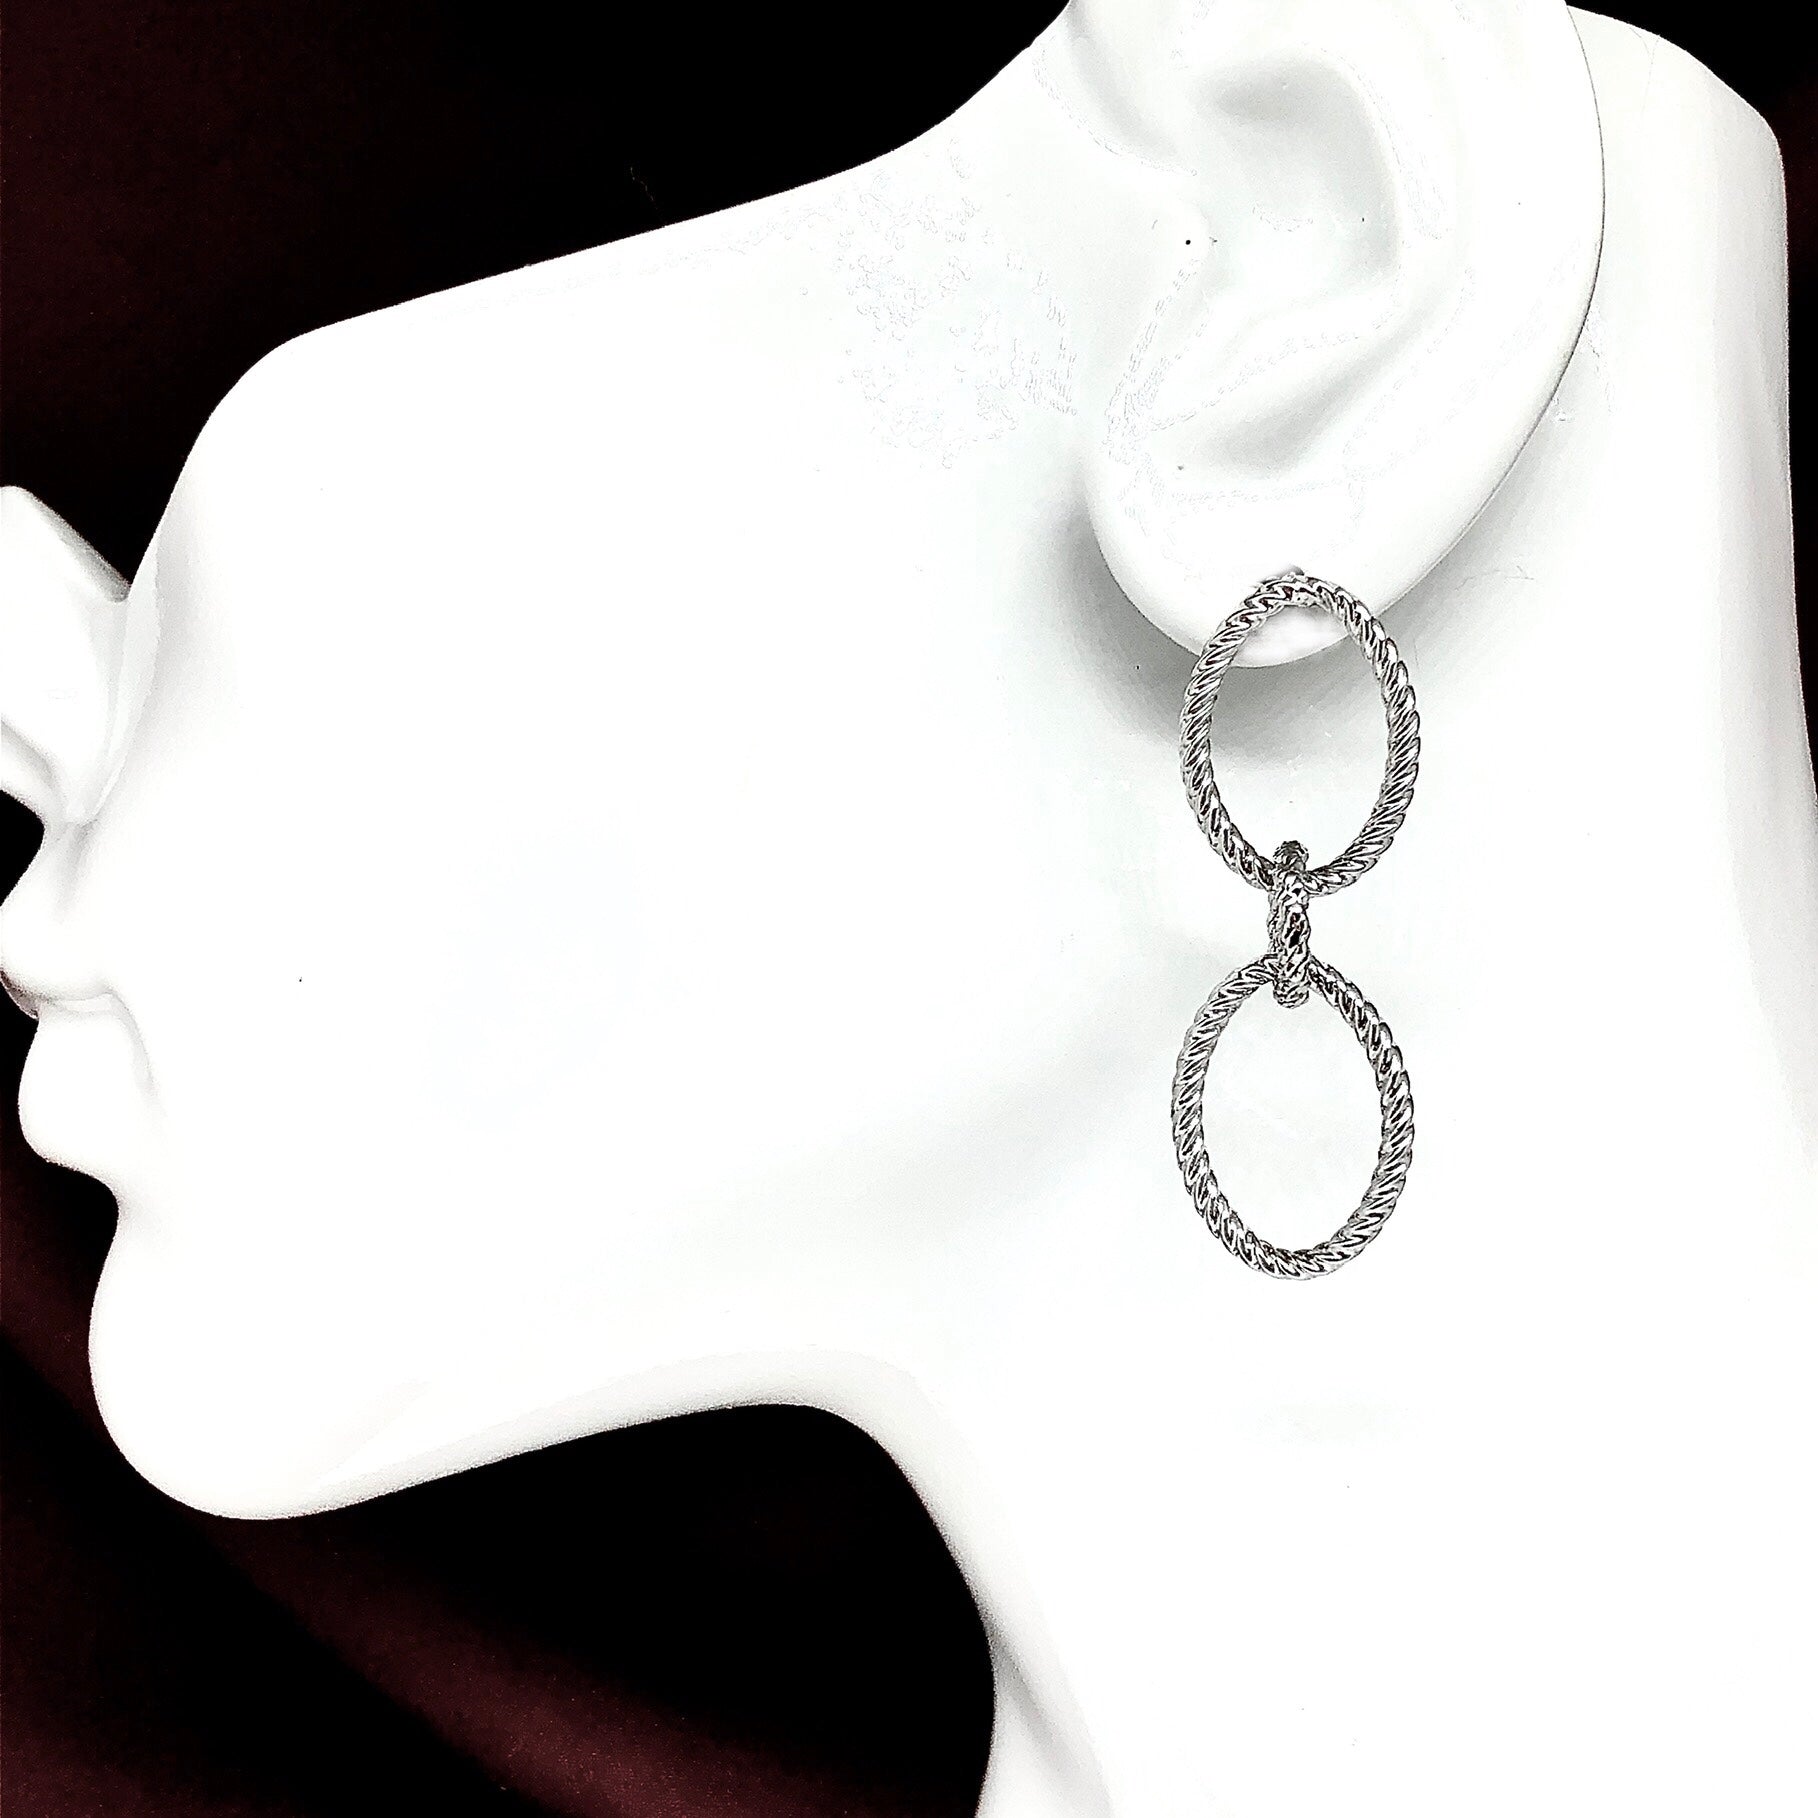 Dangle Earrings Sterling Silver Flirty Style 3 Ring Design- Blingschlingers USA